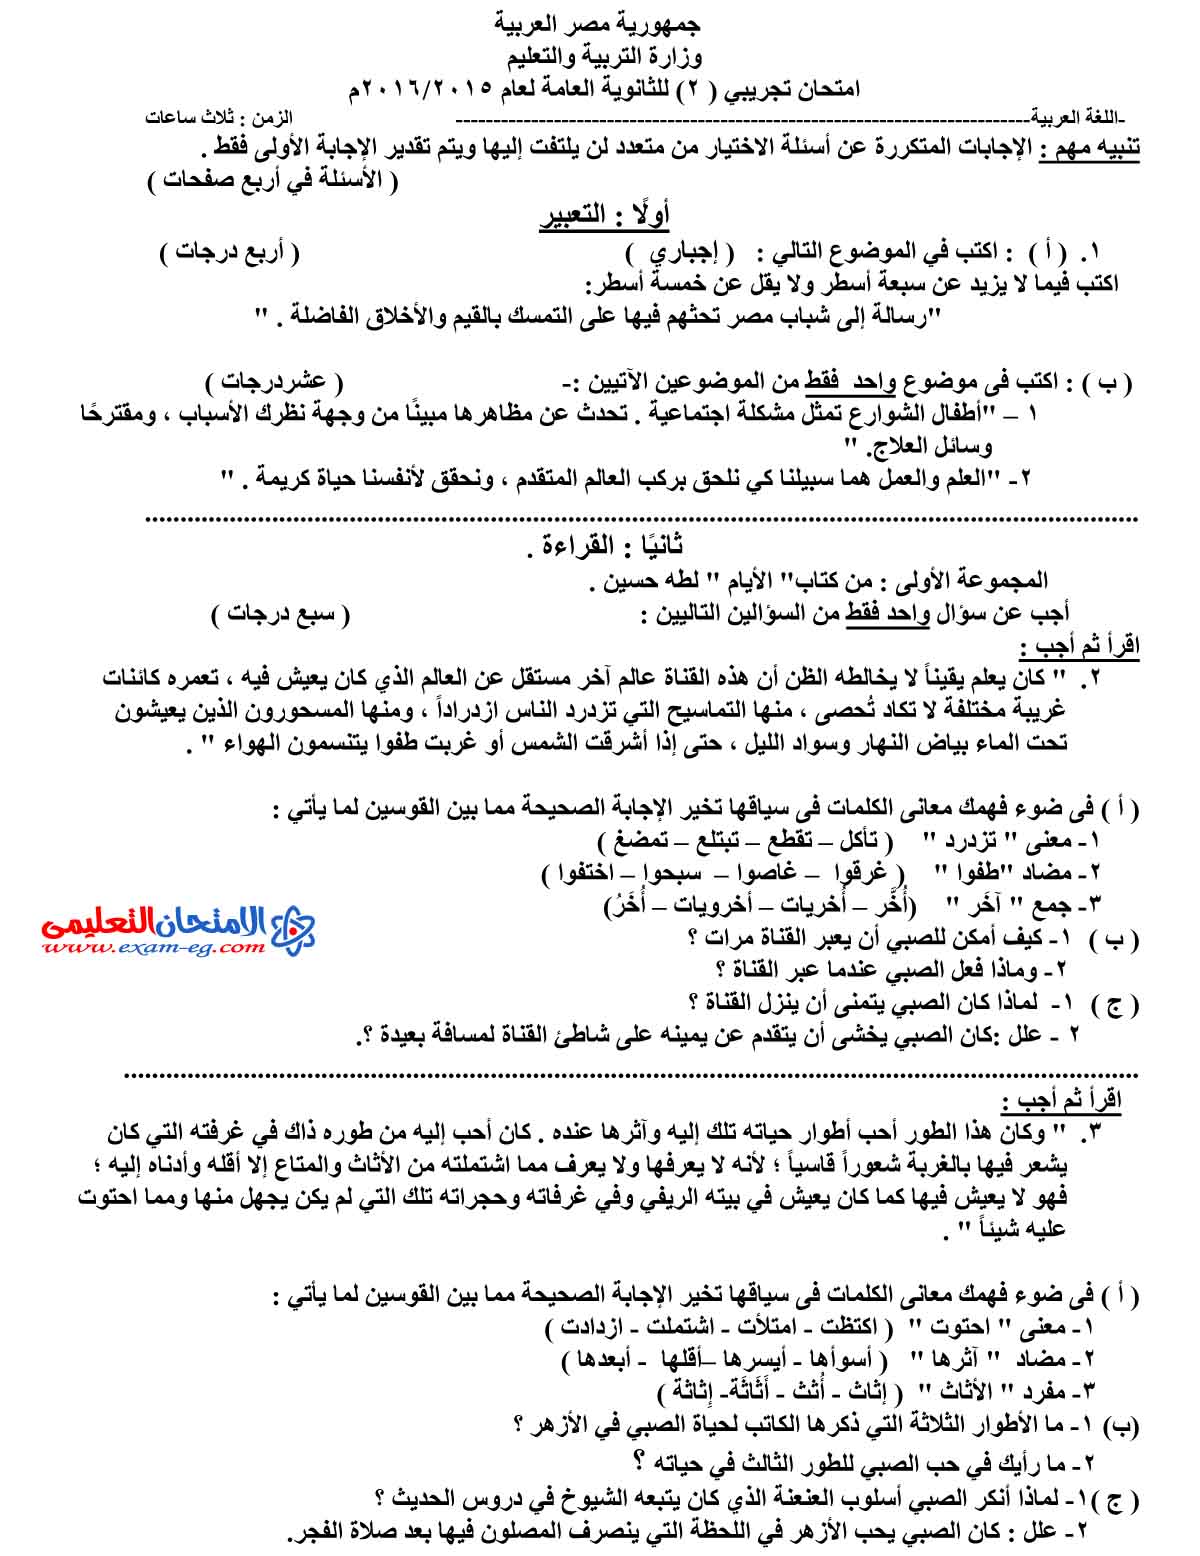 امتحان اللغة العربية 2 - مدرسة اون لاين (1)